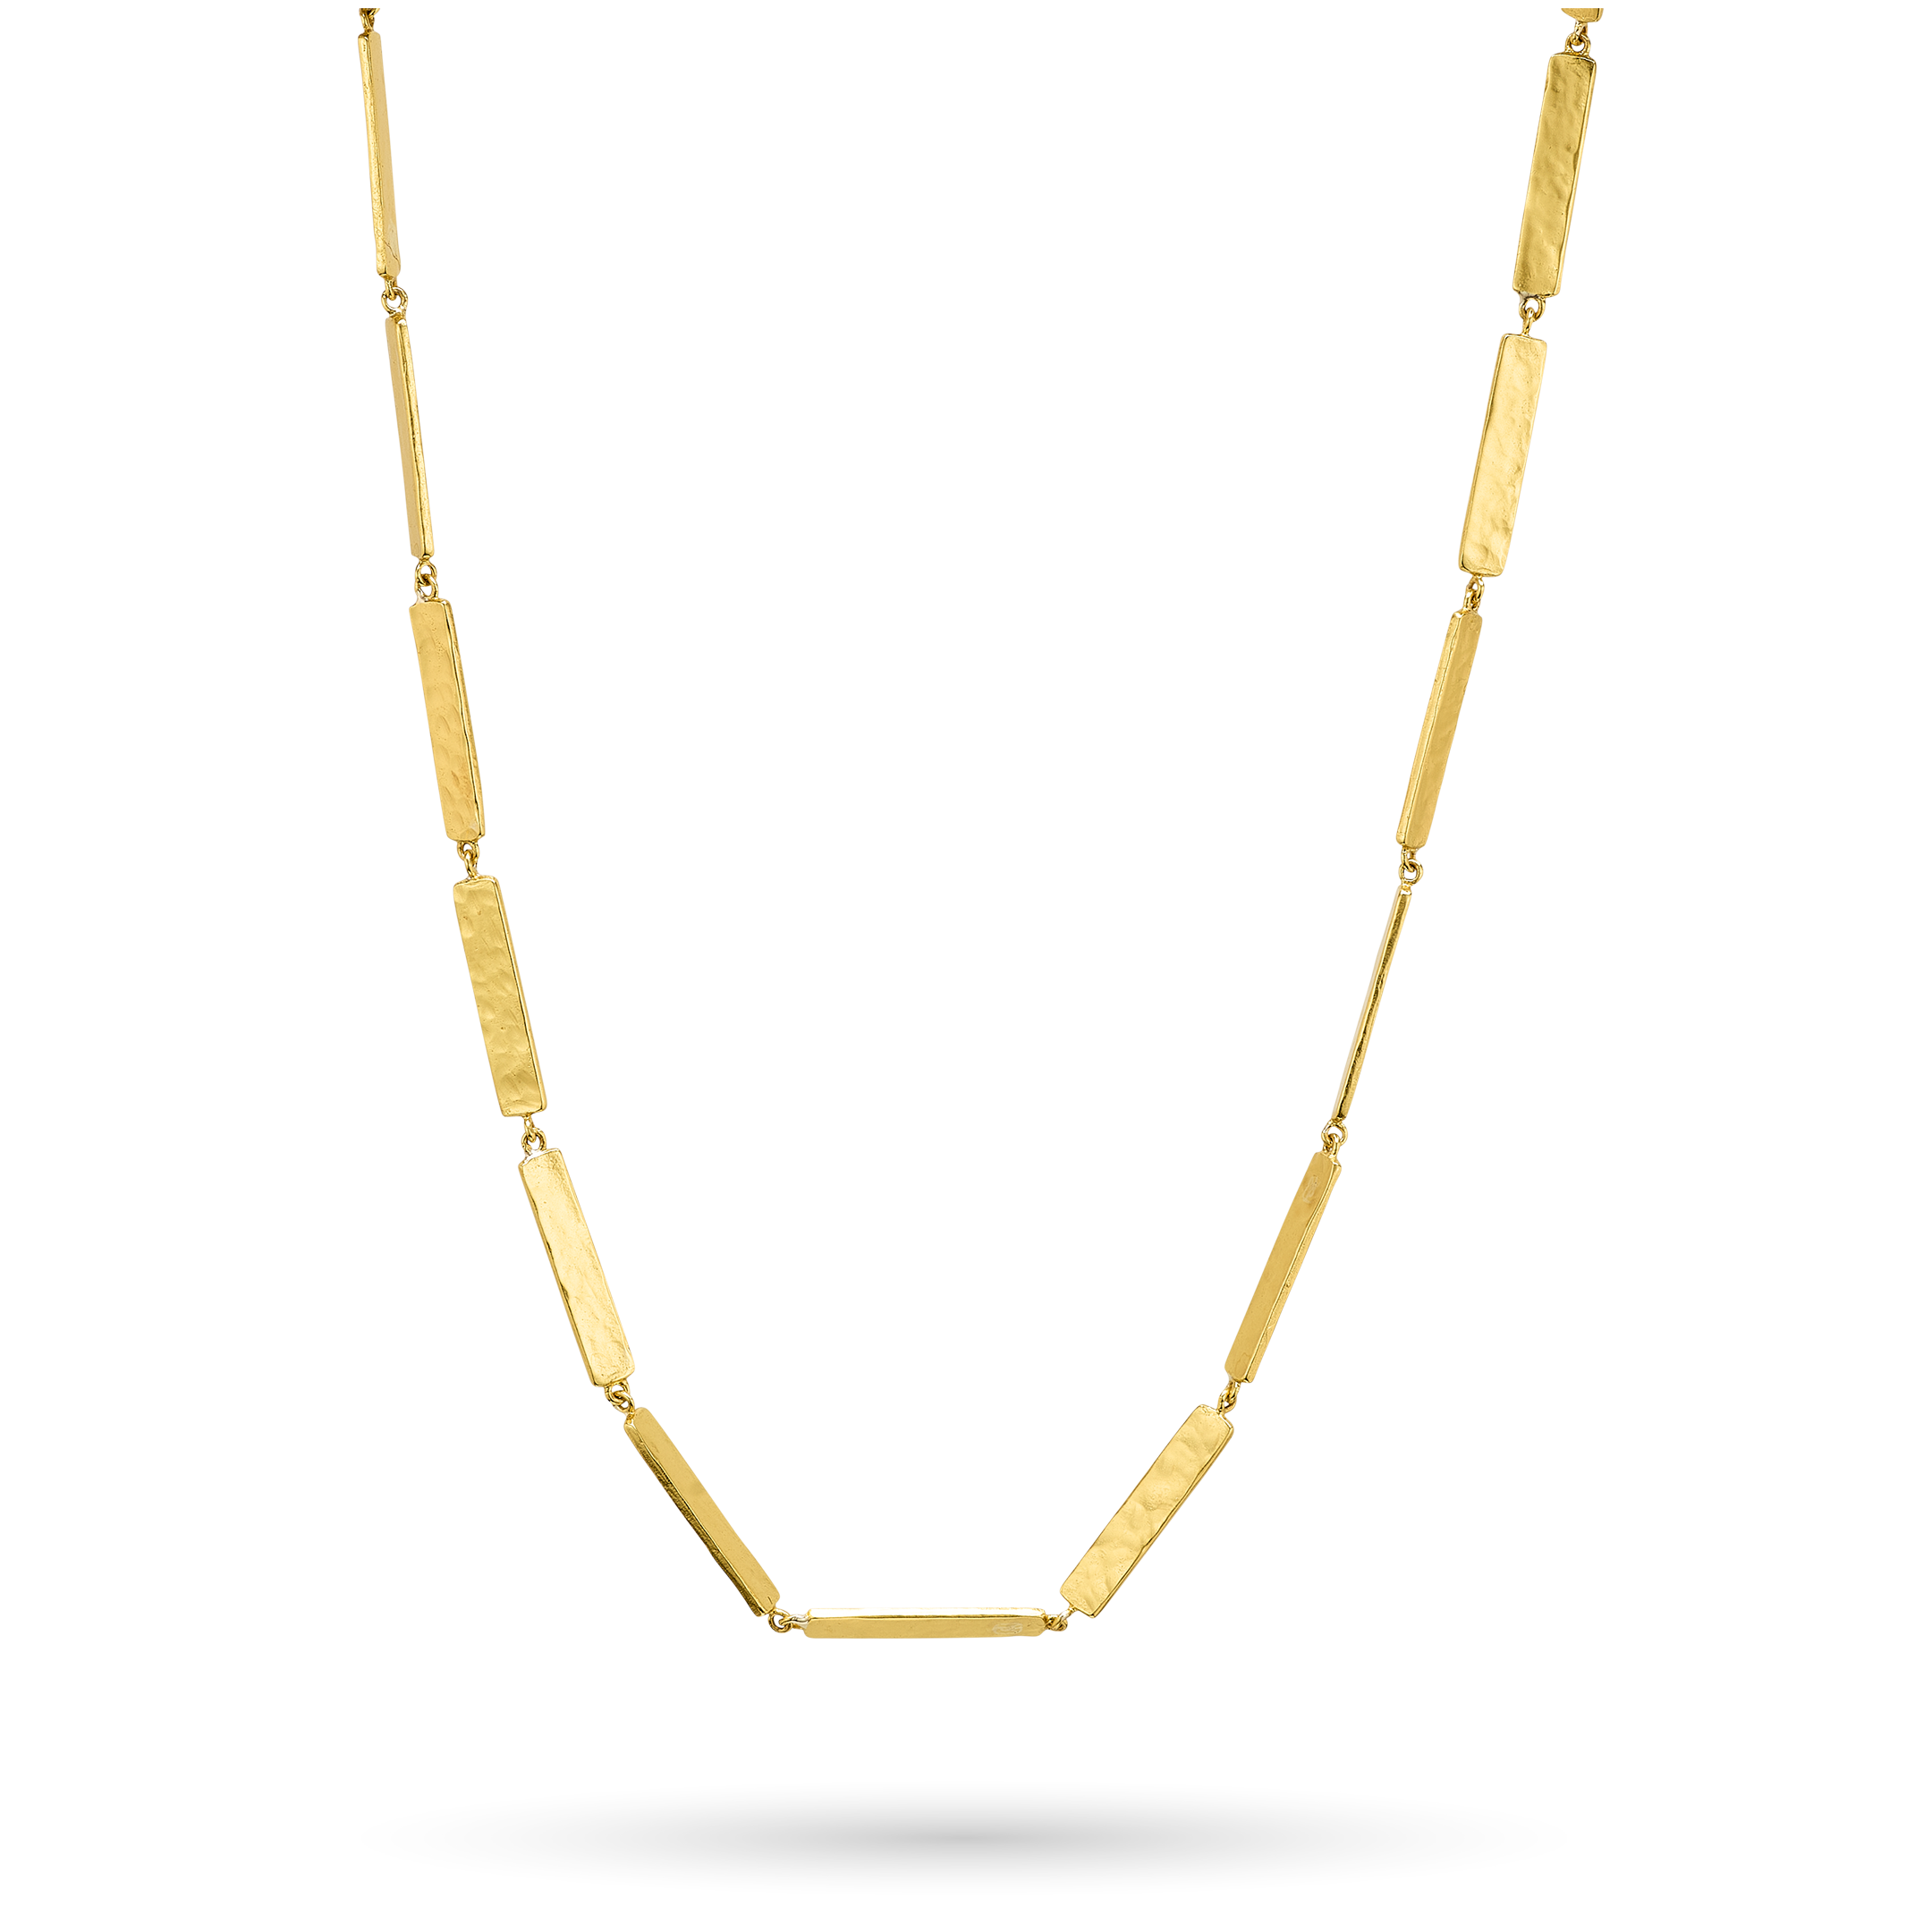 Linea Necklace - Ceramic Coated Brass